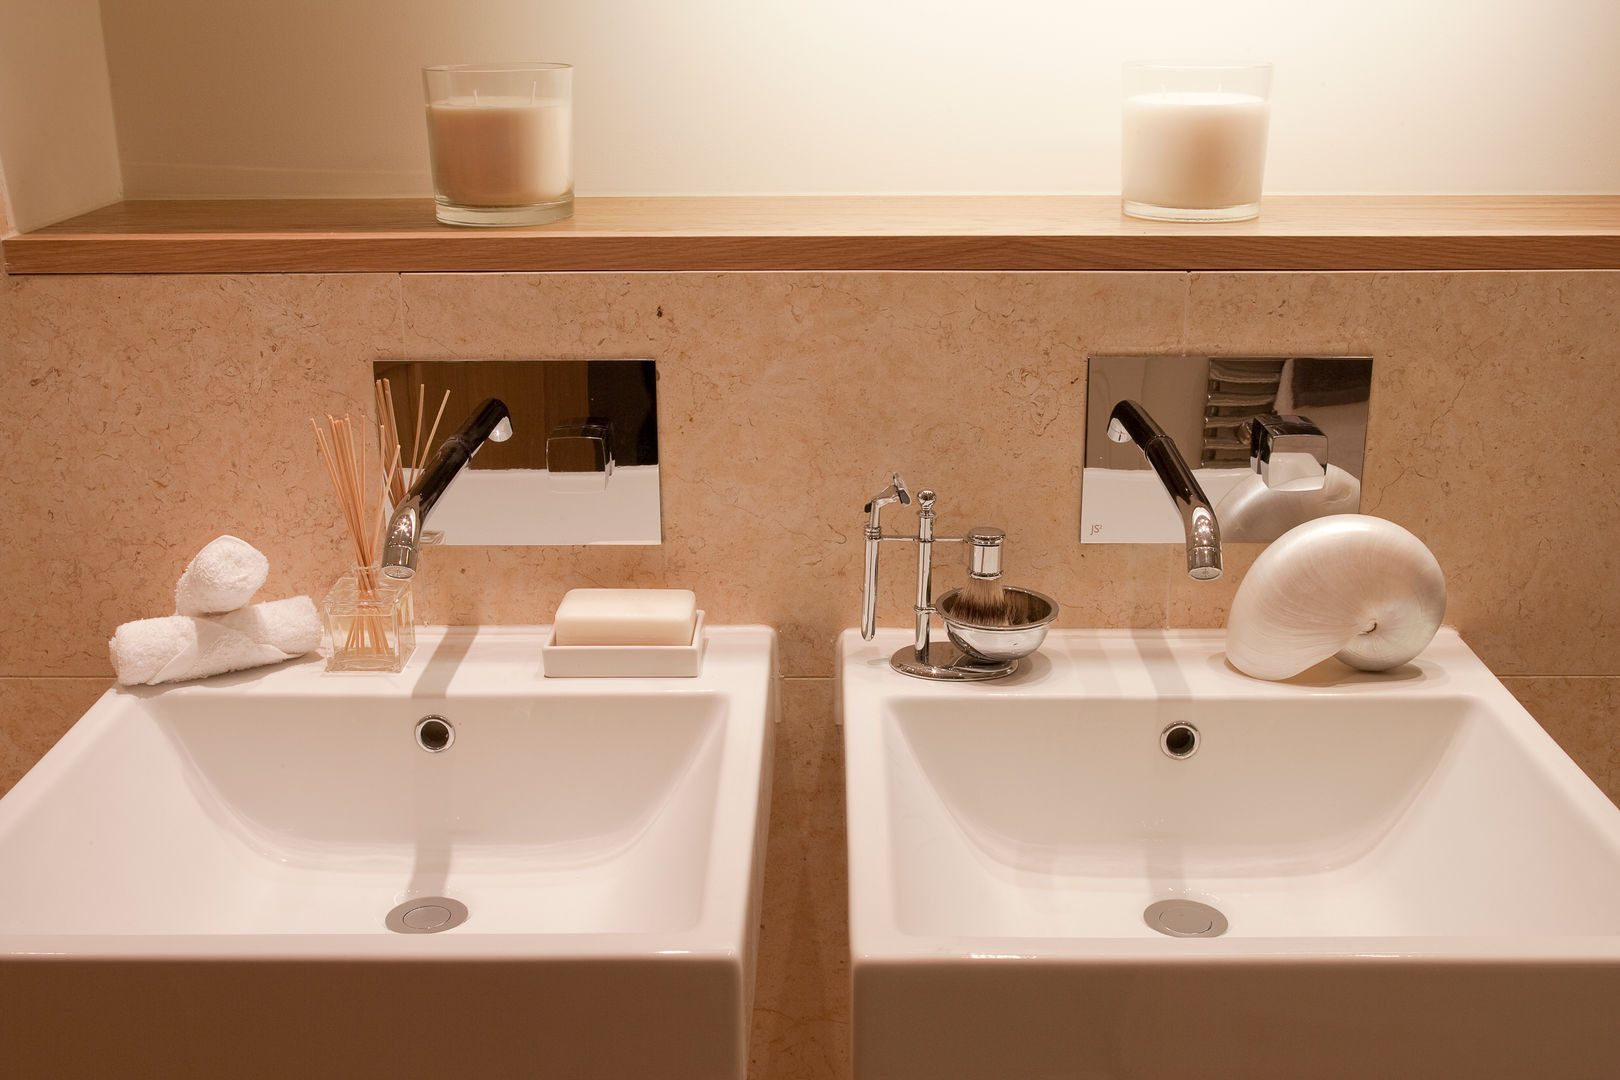 Bathroom Roselind Wilson Design Klassieke badkamers luxury,candles,modern,bathroom